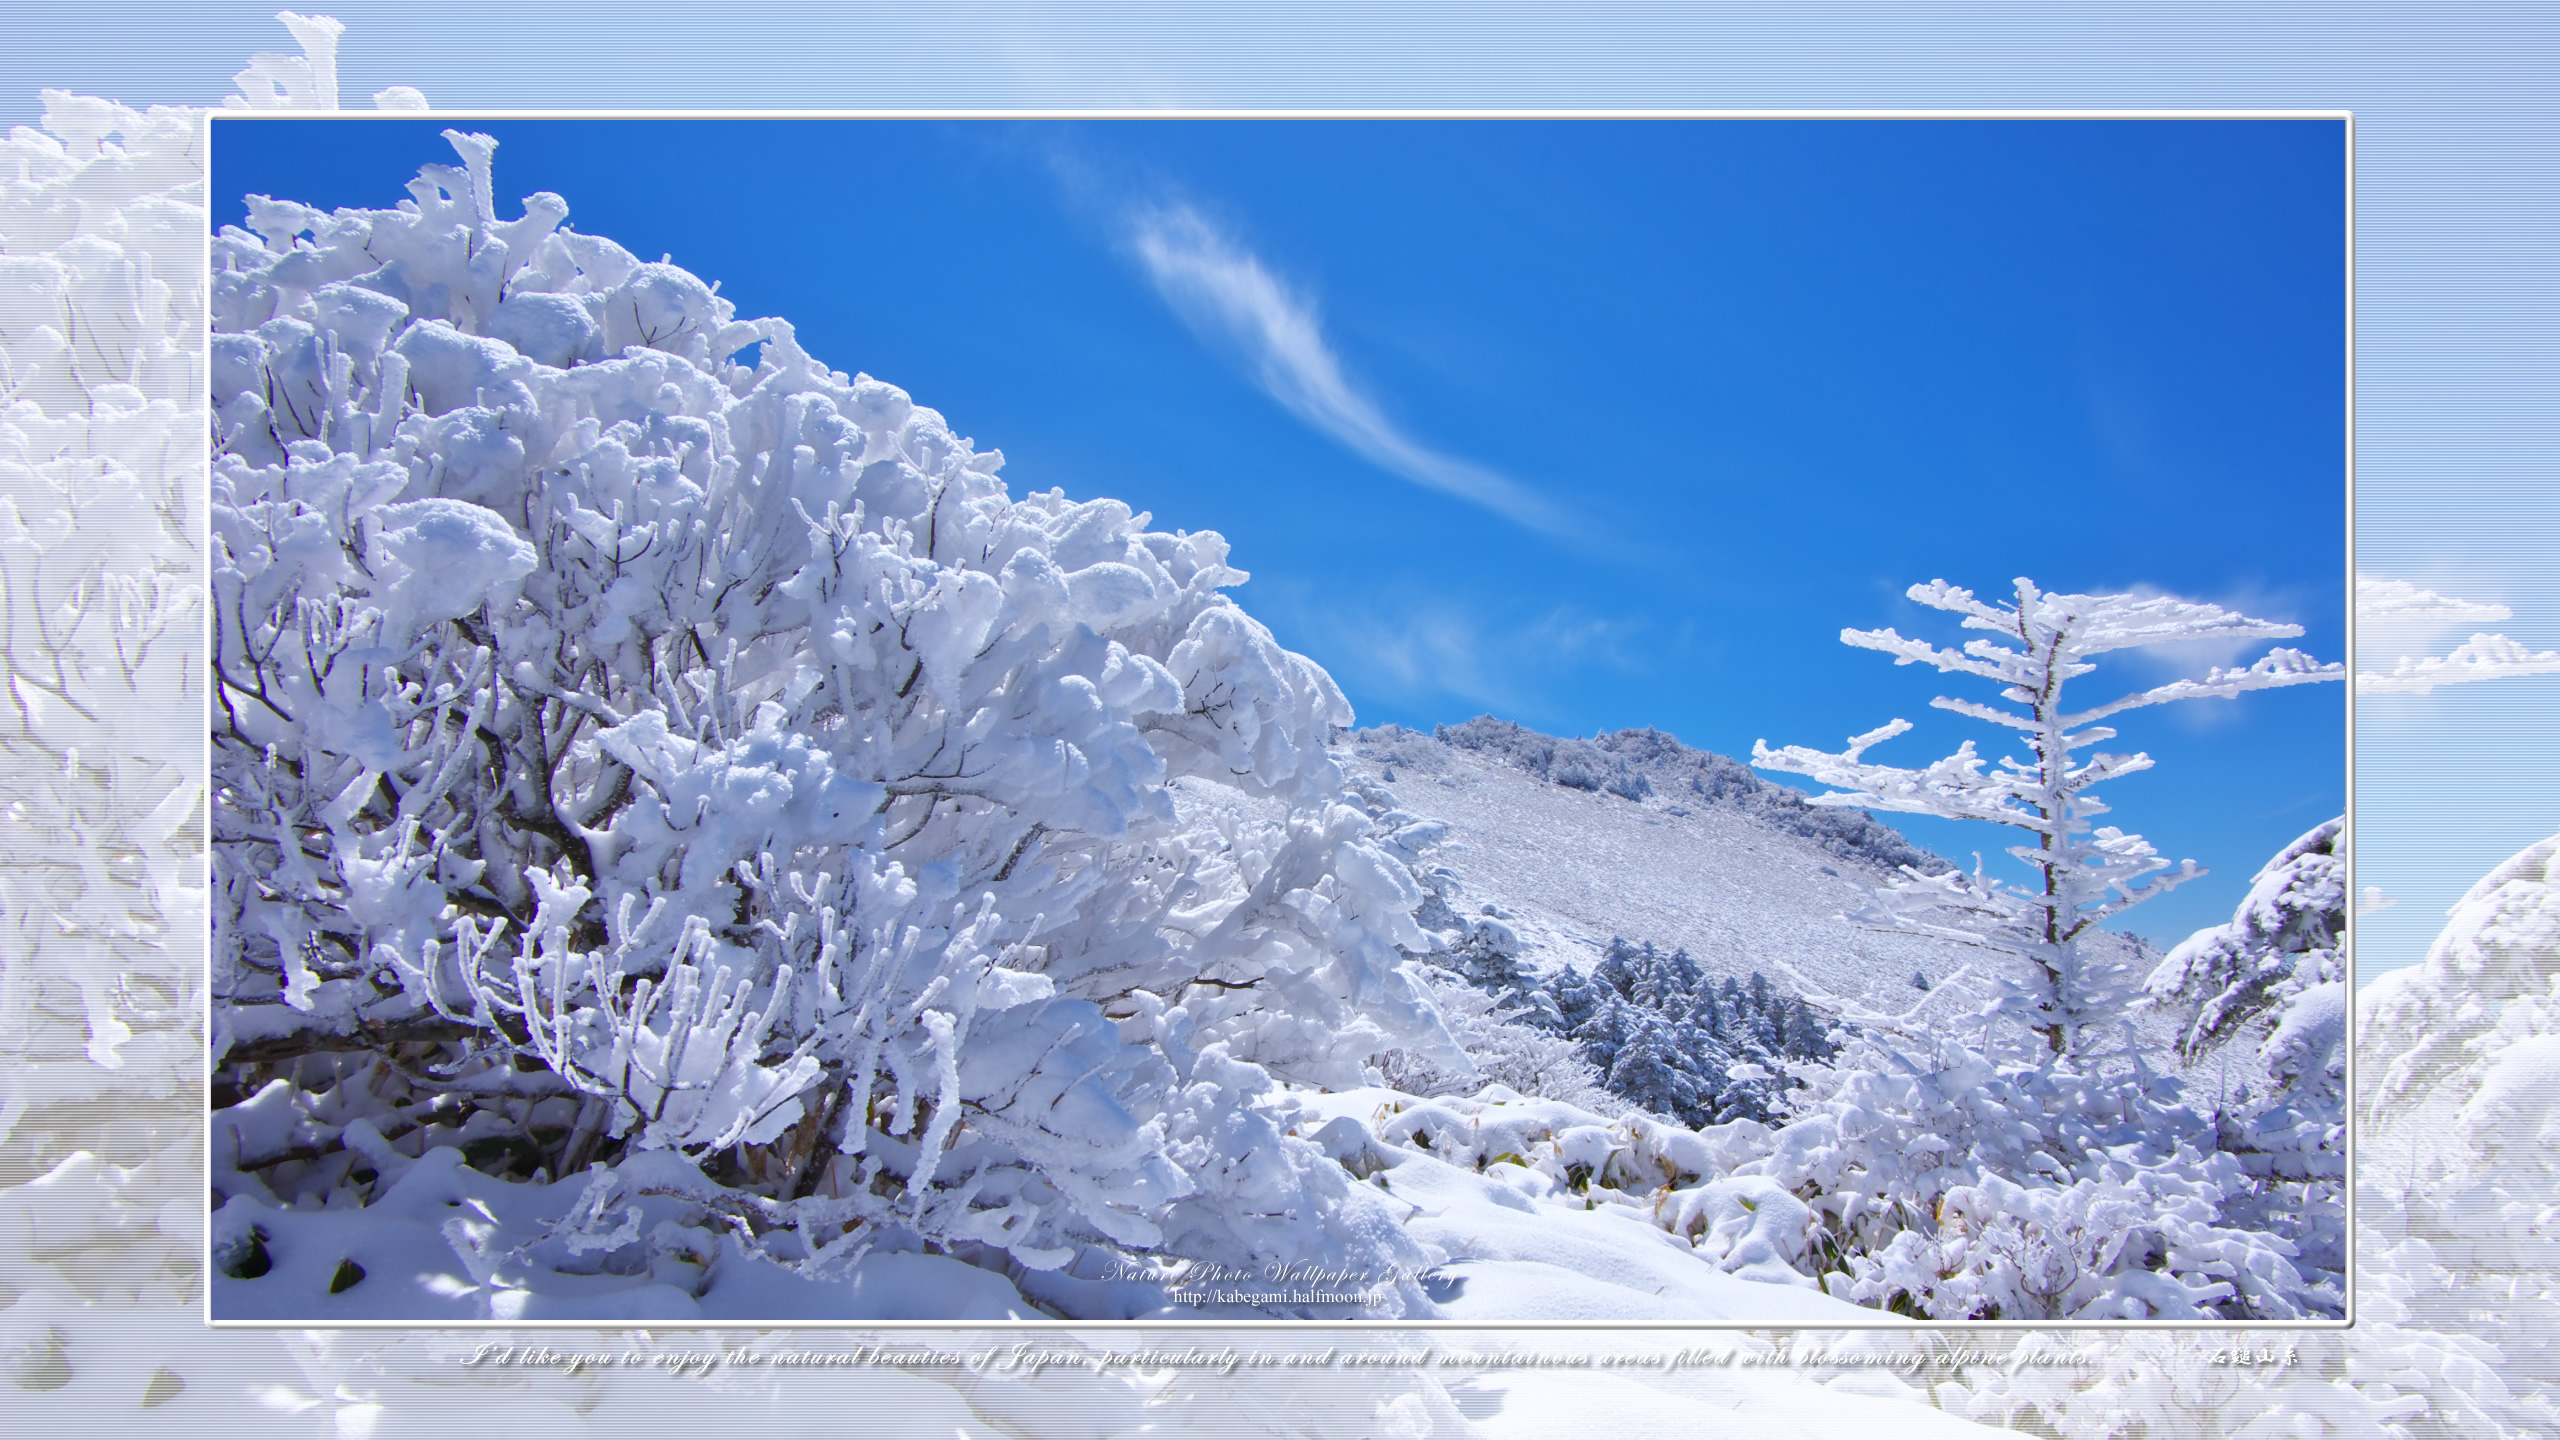 山 森の壁紙 瓶ヶ森雪景色 3 ネイチャーフォト壁紙館